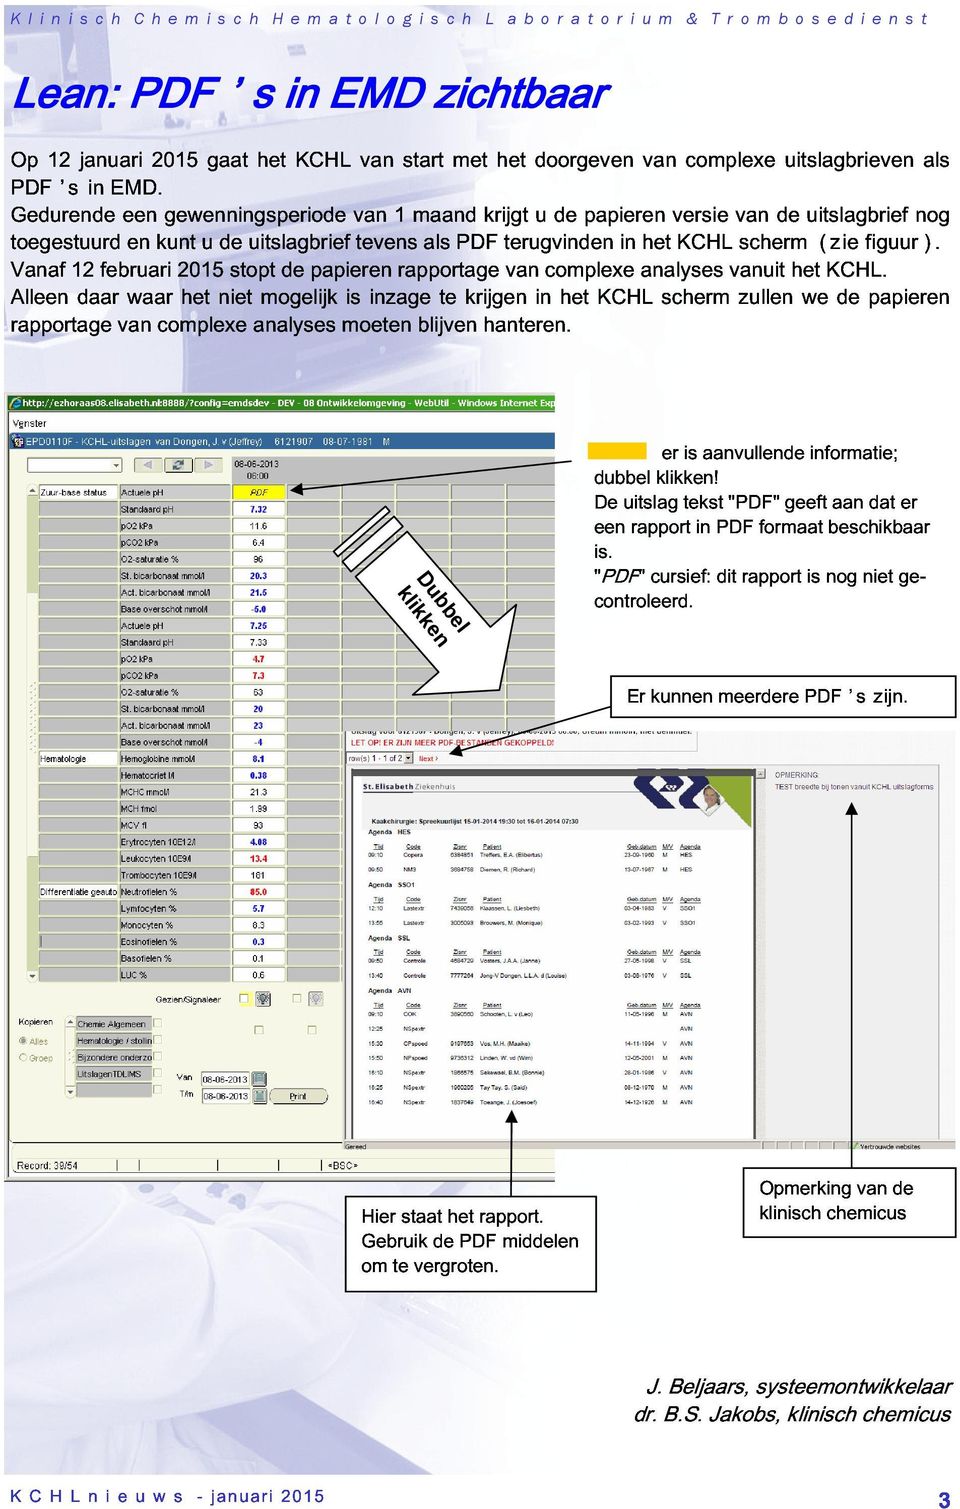 stopt analyses mogelijk papieren moeten is inzage rapportage blijven te PDF krijgen hanteren. terugvinden van complexe het KCHL in analyses het scherm KCHL vanuit zullen scherm het we (zie KCHL.